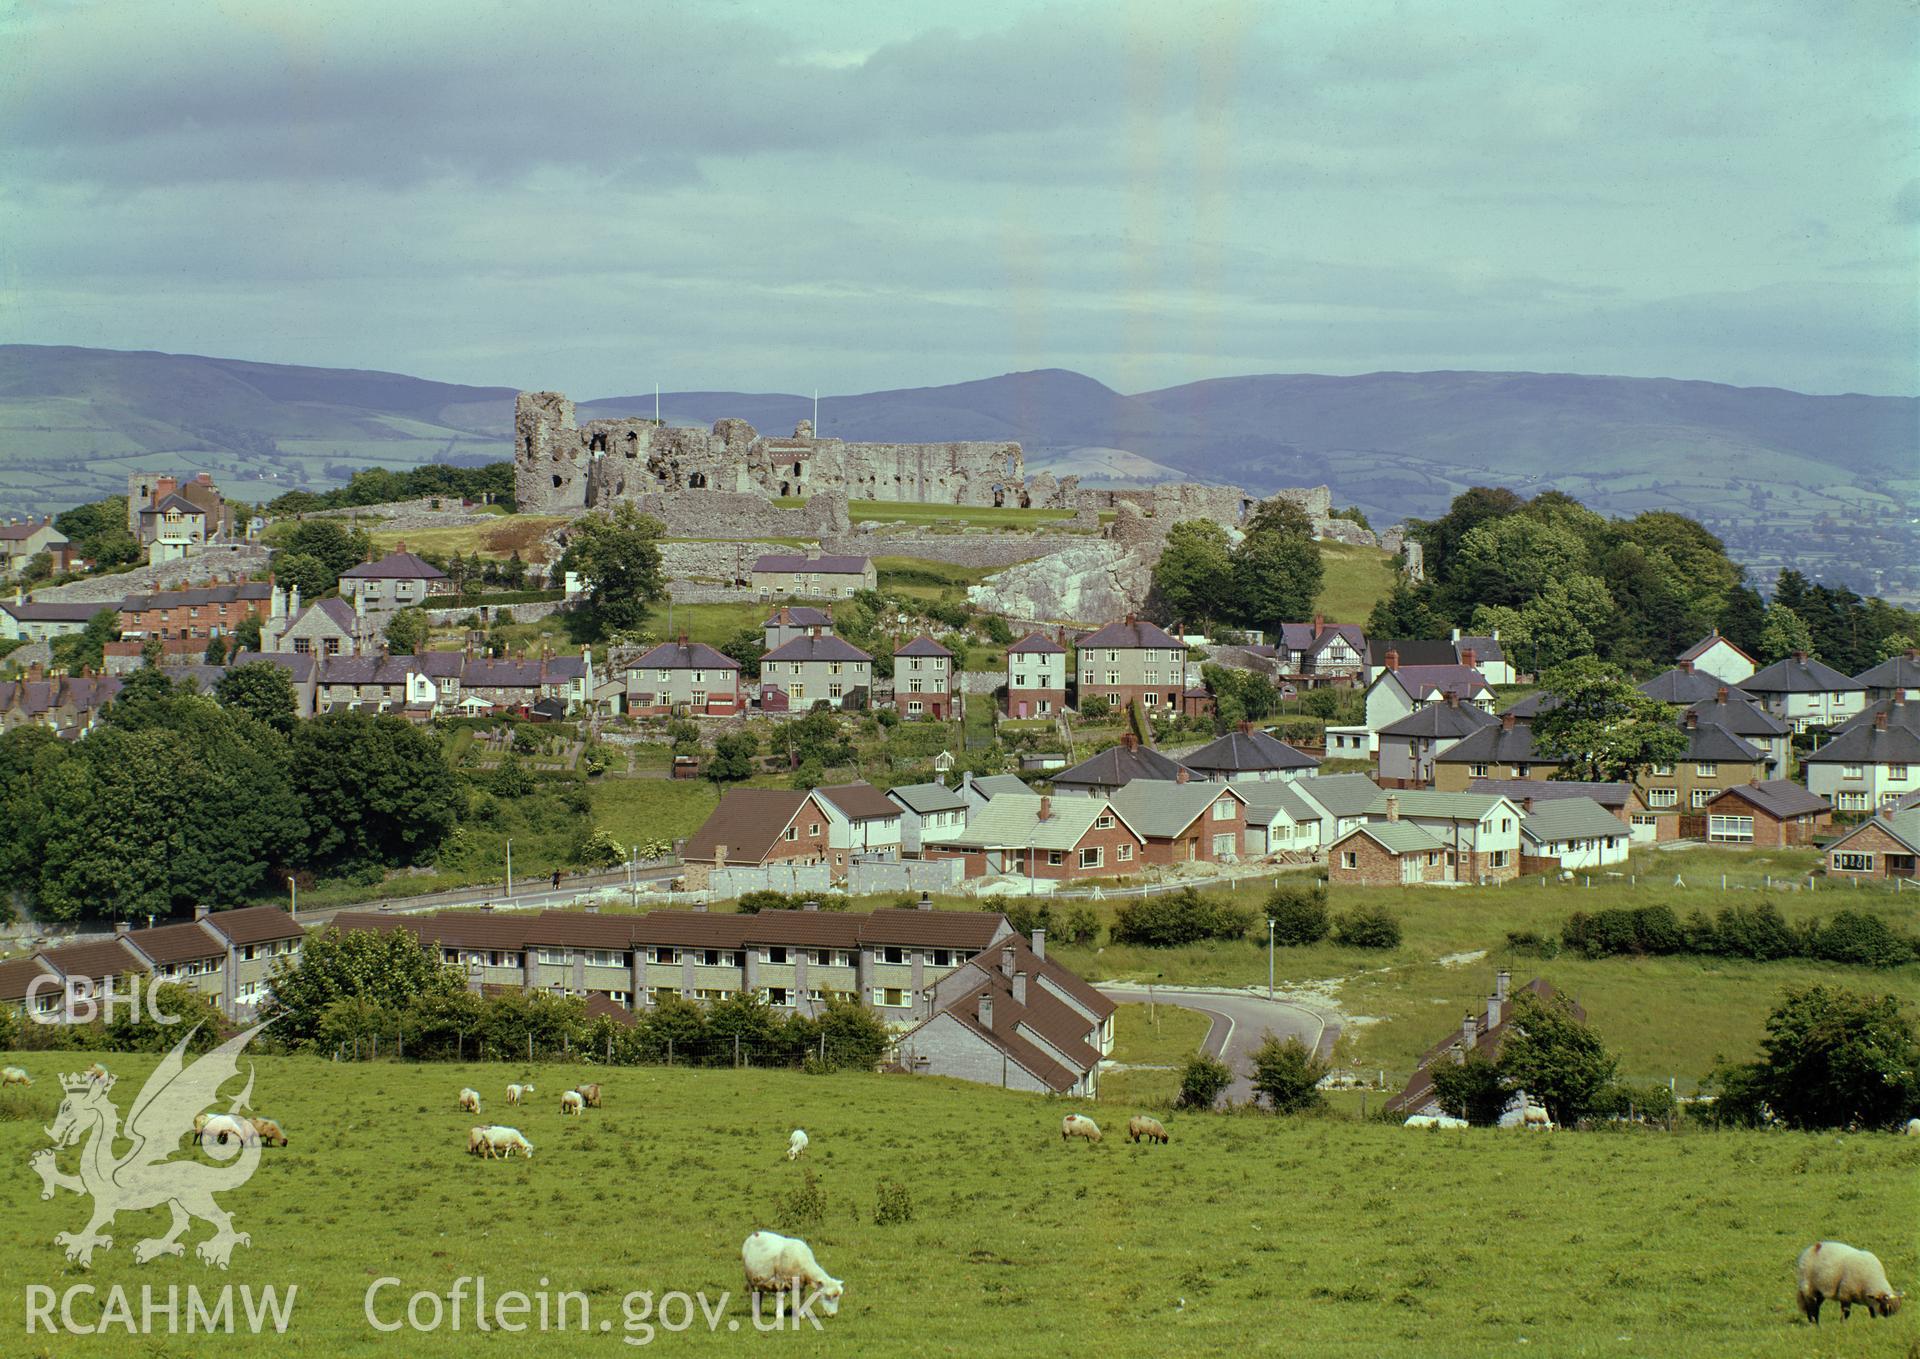 D.O.E photograph of Denbigh Castle.